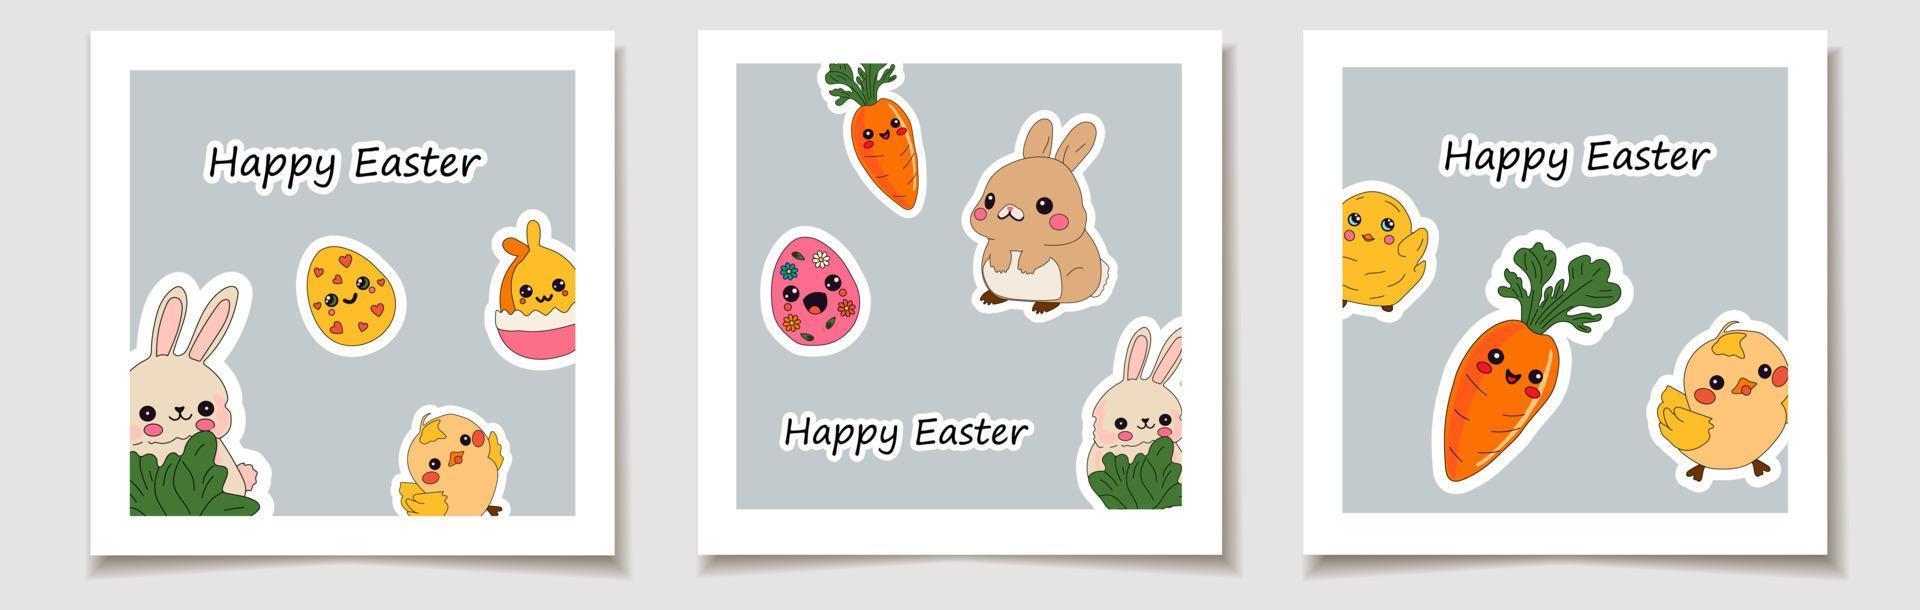 feliz tarjeta vectorial de Pascua. diseño hecho a mano de la tarjeta de felicitación de primavera. vector